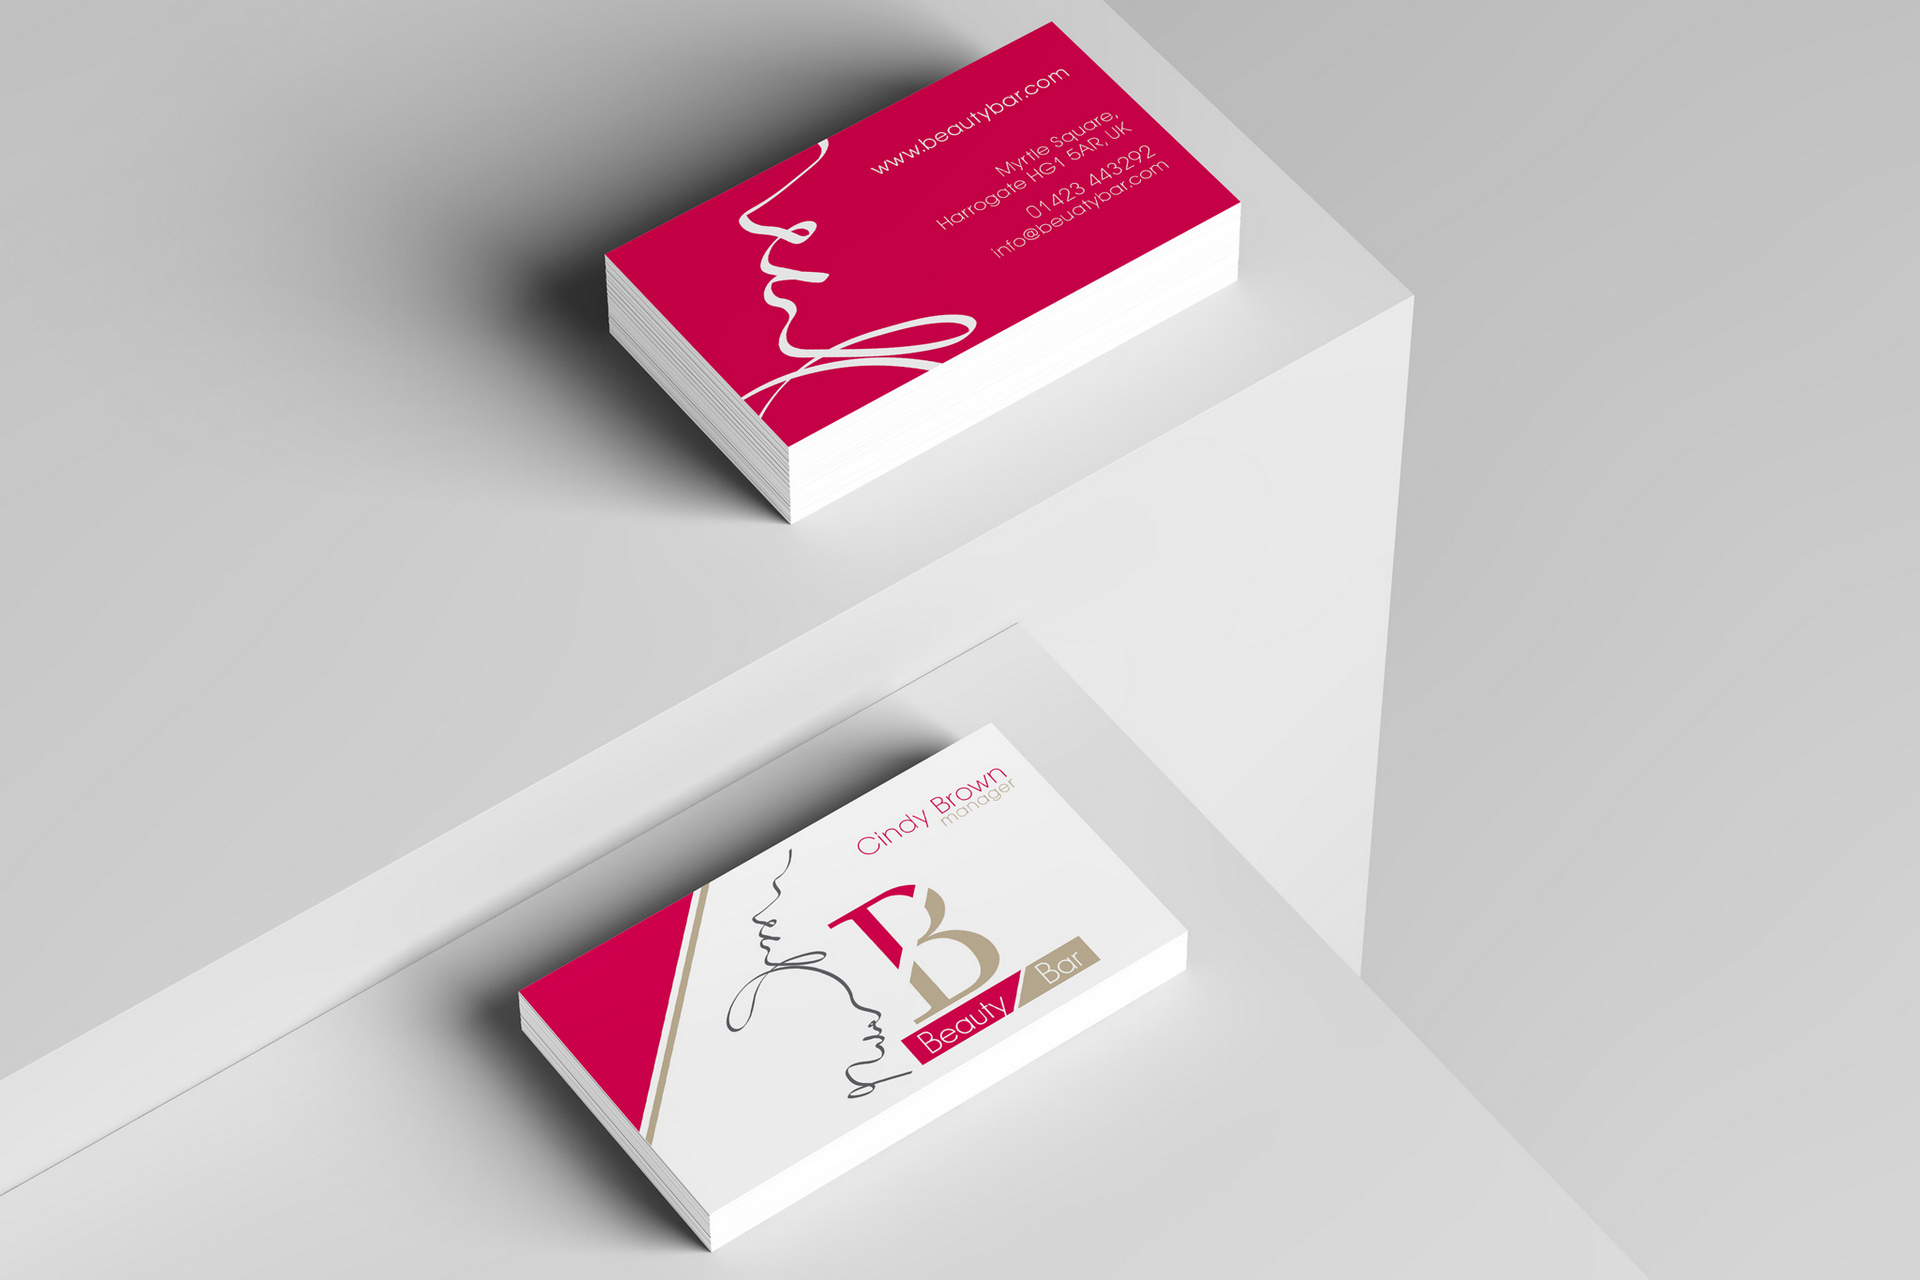 Beauty bar business cards design